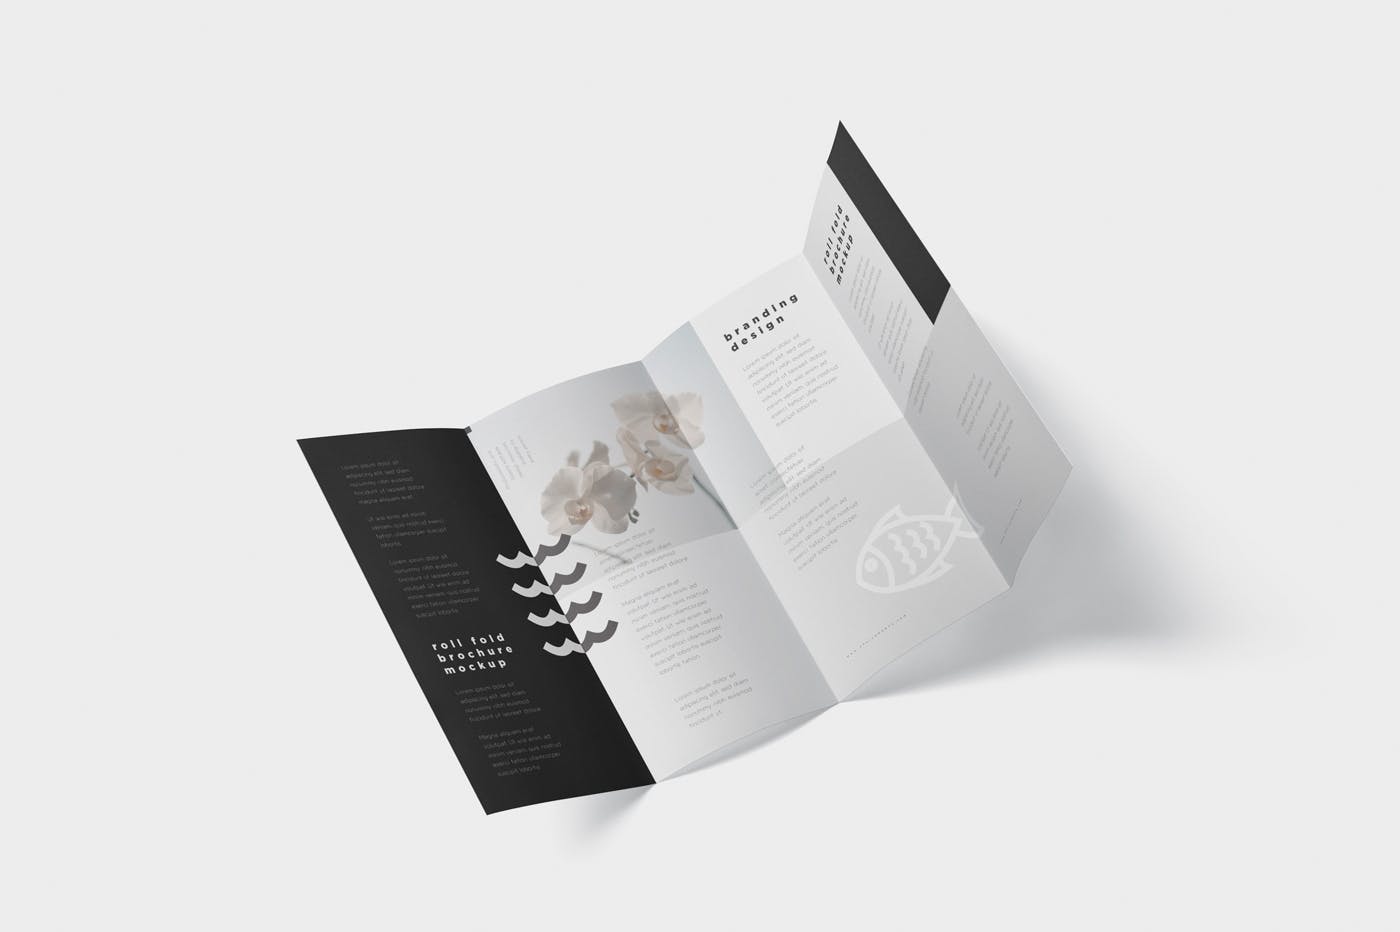 折叠设计风格企业传单/宣传册设计样机16设计网精选 Roll-Fold Brochure Mockup – DL DIN Lang Size插图(5)